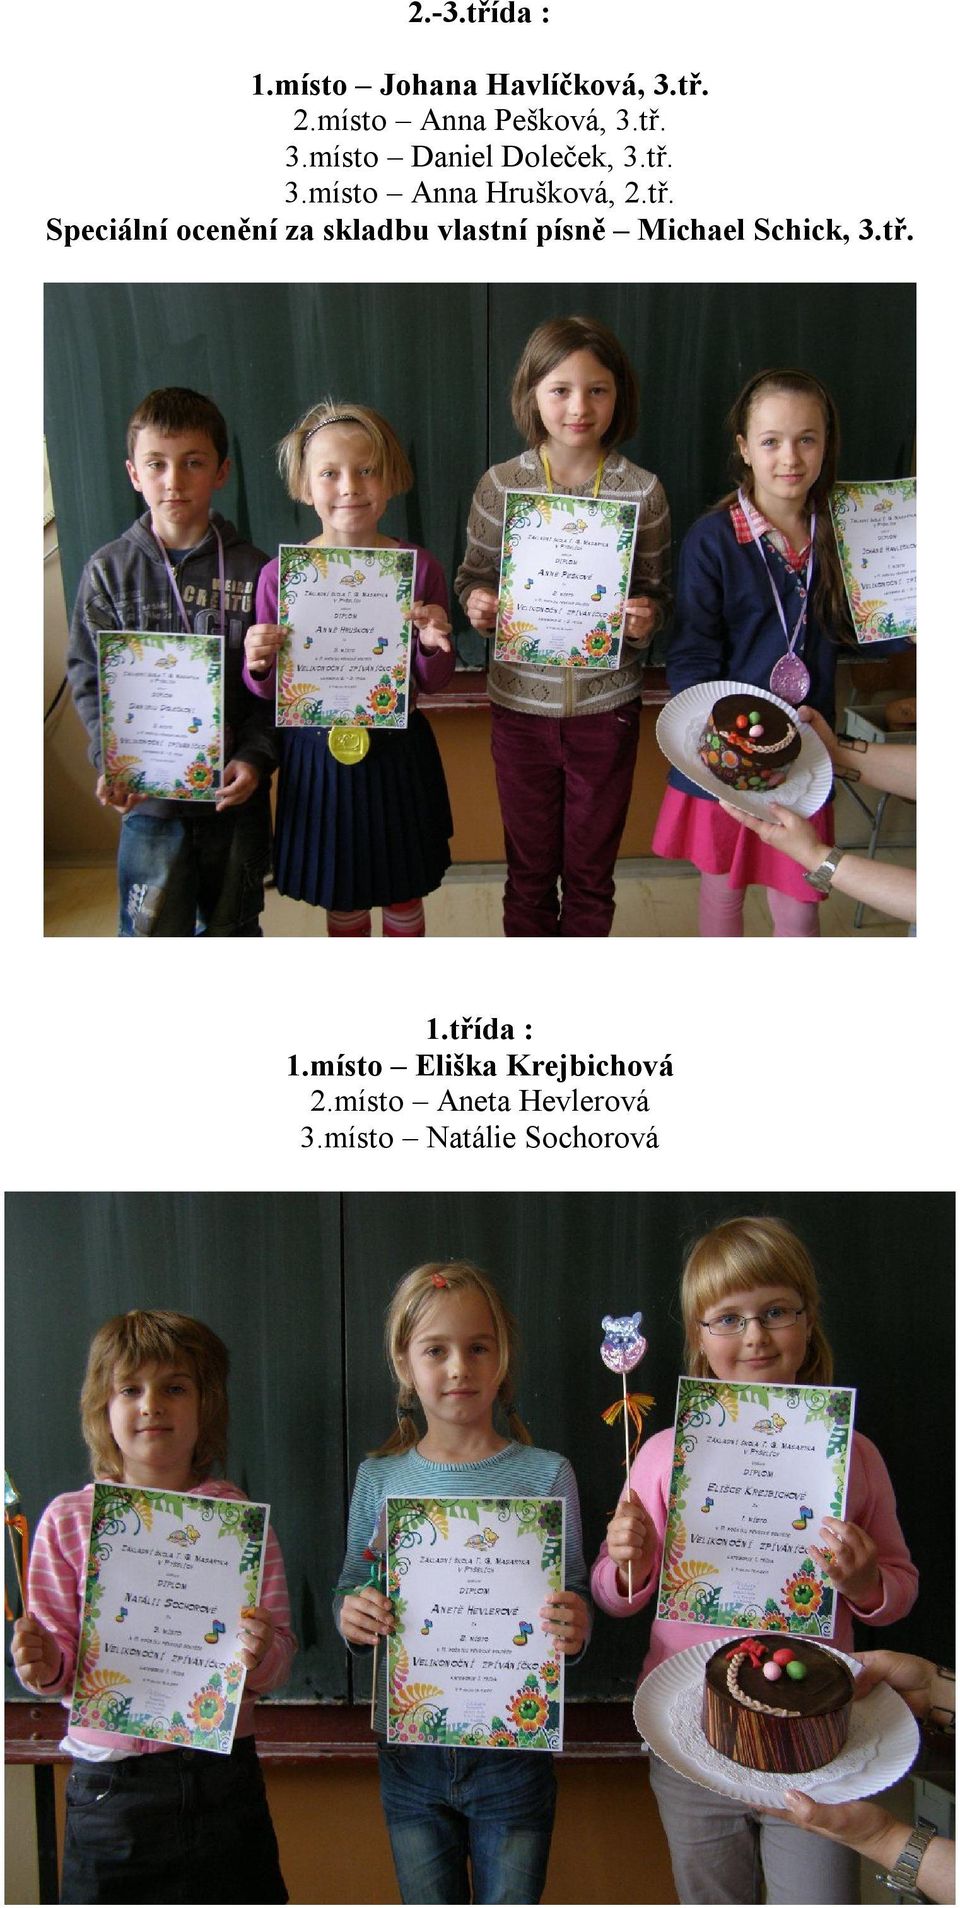 tř. 1.třída : 1.místo Eliška Krejbichová 2.místo Aneta Hevlerová 3.